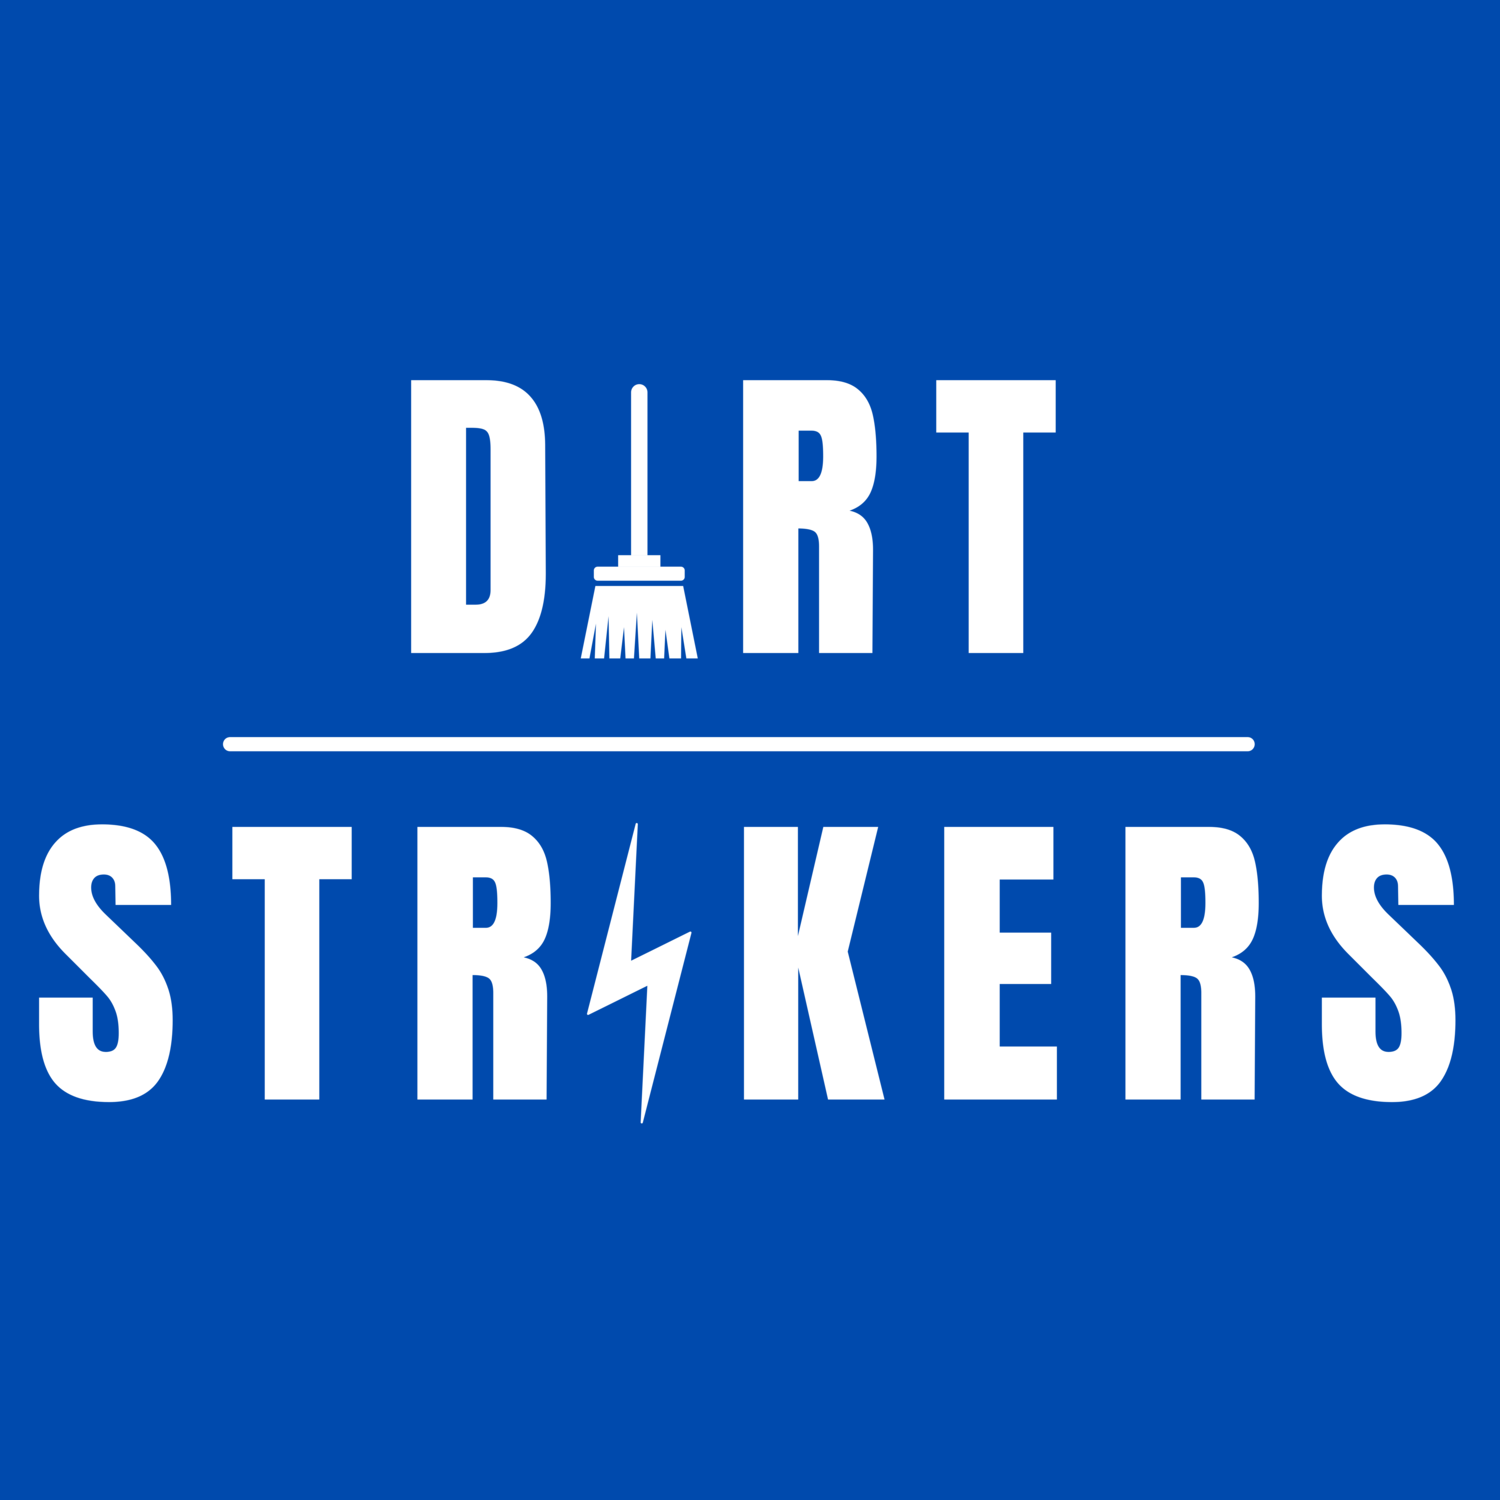 Dirt Strikers